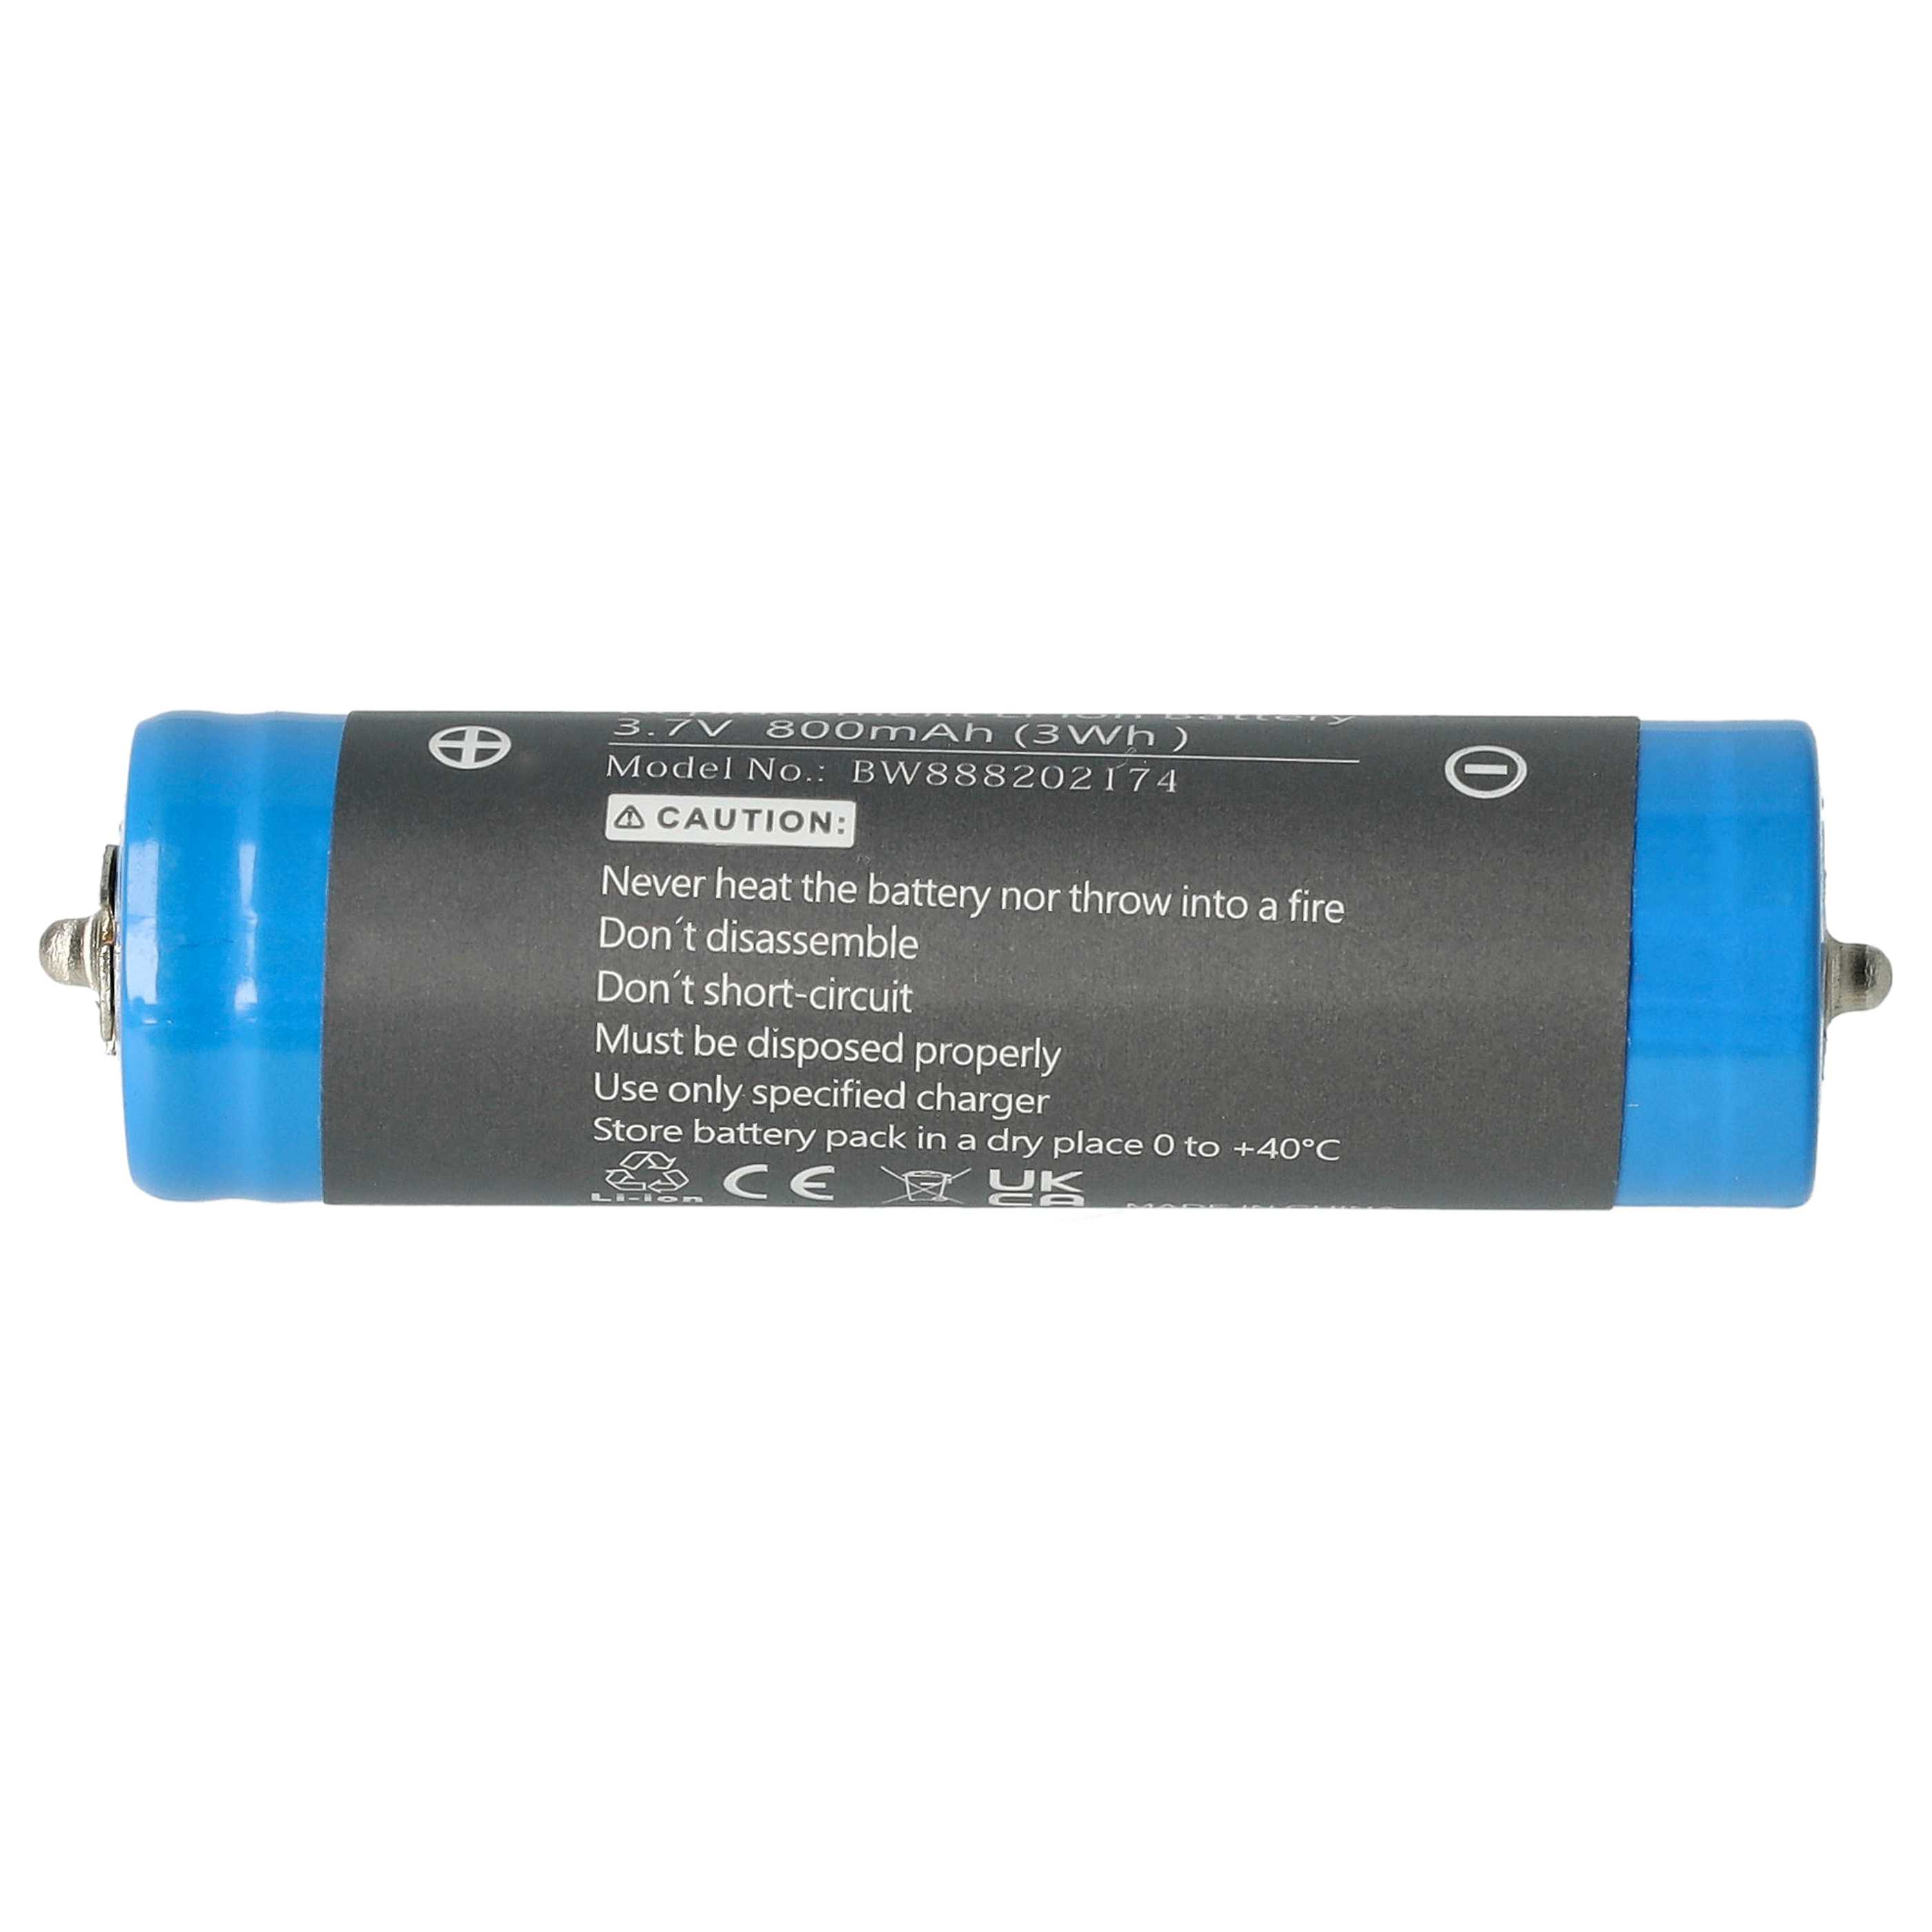 Batterie remplace Panasonic WES8163L2505, WESLV95L2508 pour rasoir électrique - 800mAh 3,7V Li-ion